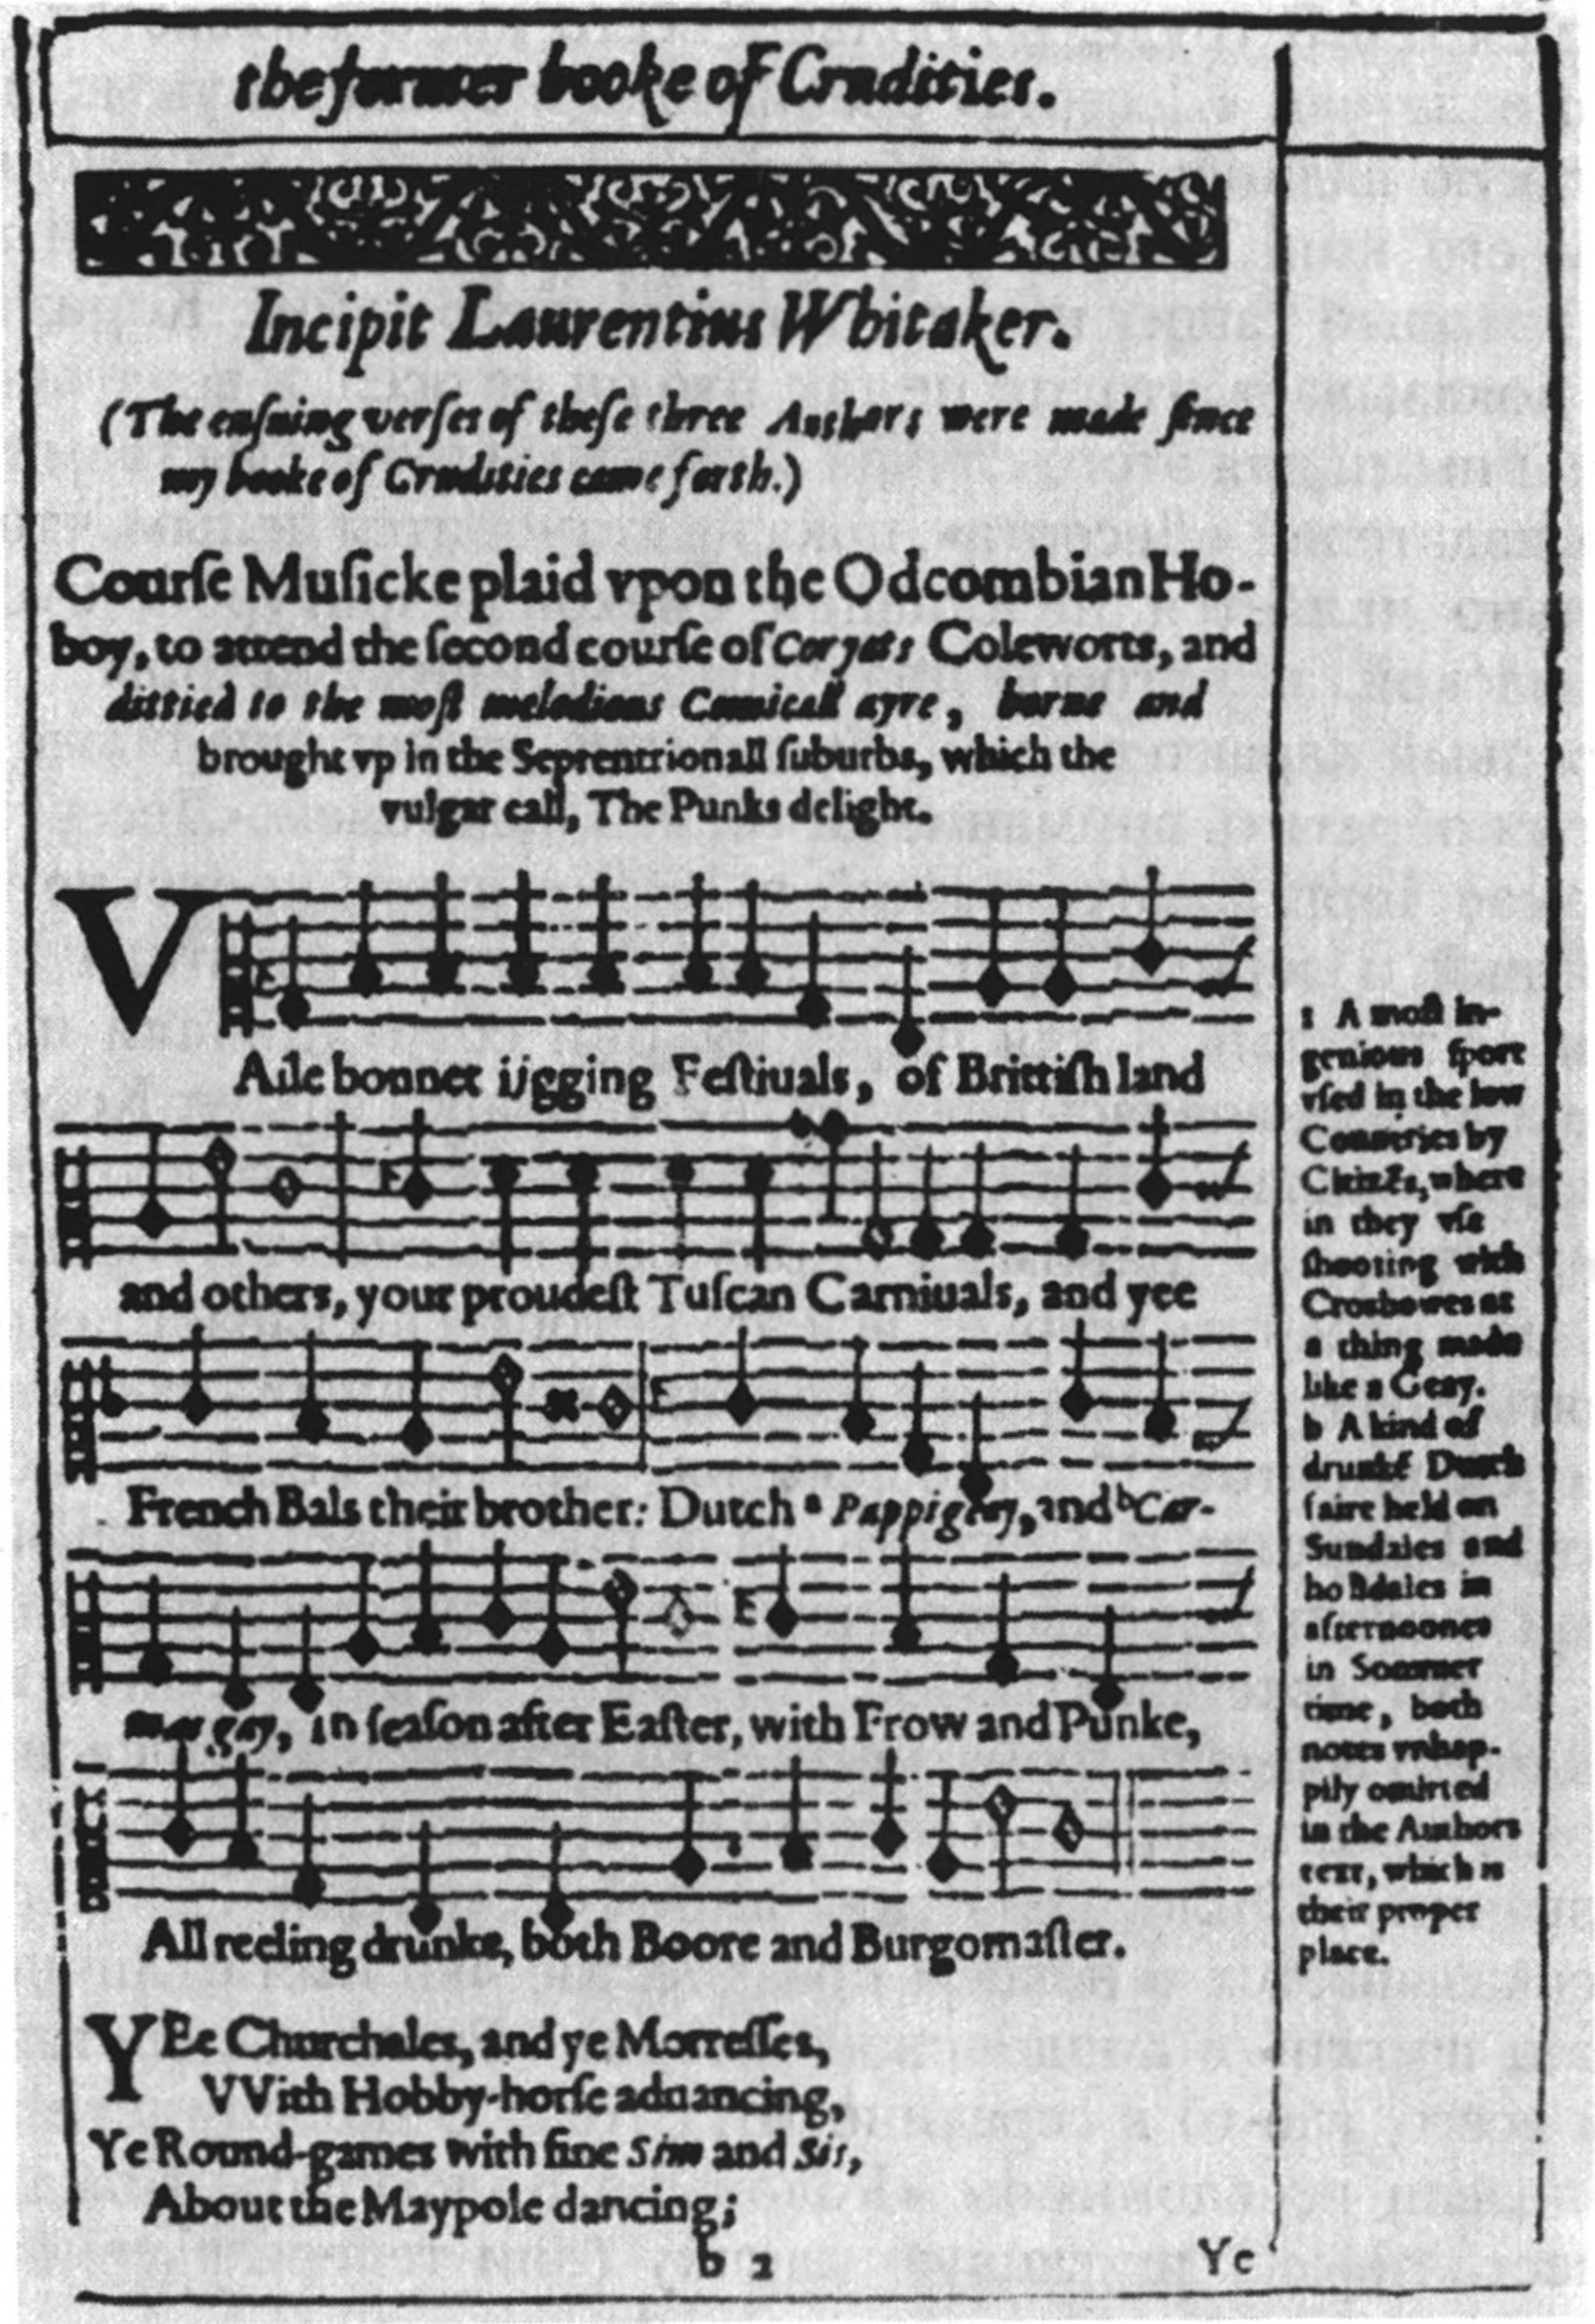 Этот панегирик в честь Кориэта даже снабжен нотами, чтобы читатели могли его распевать под аккомпанемент гобоя